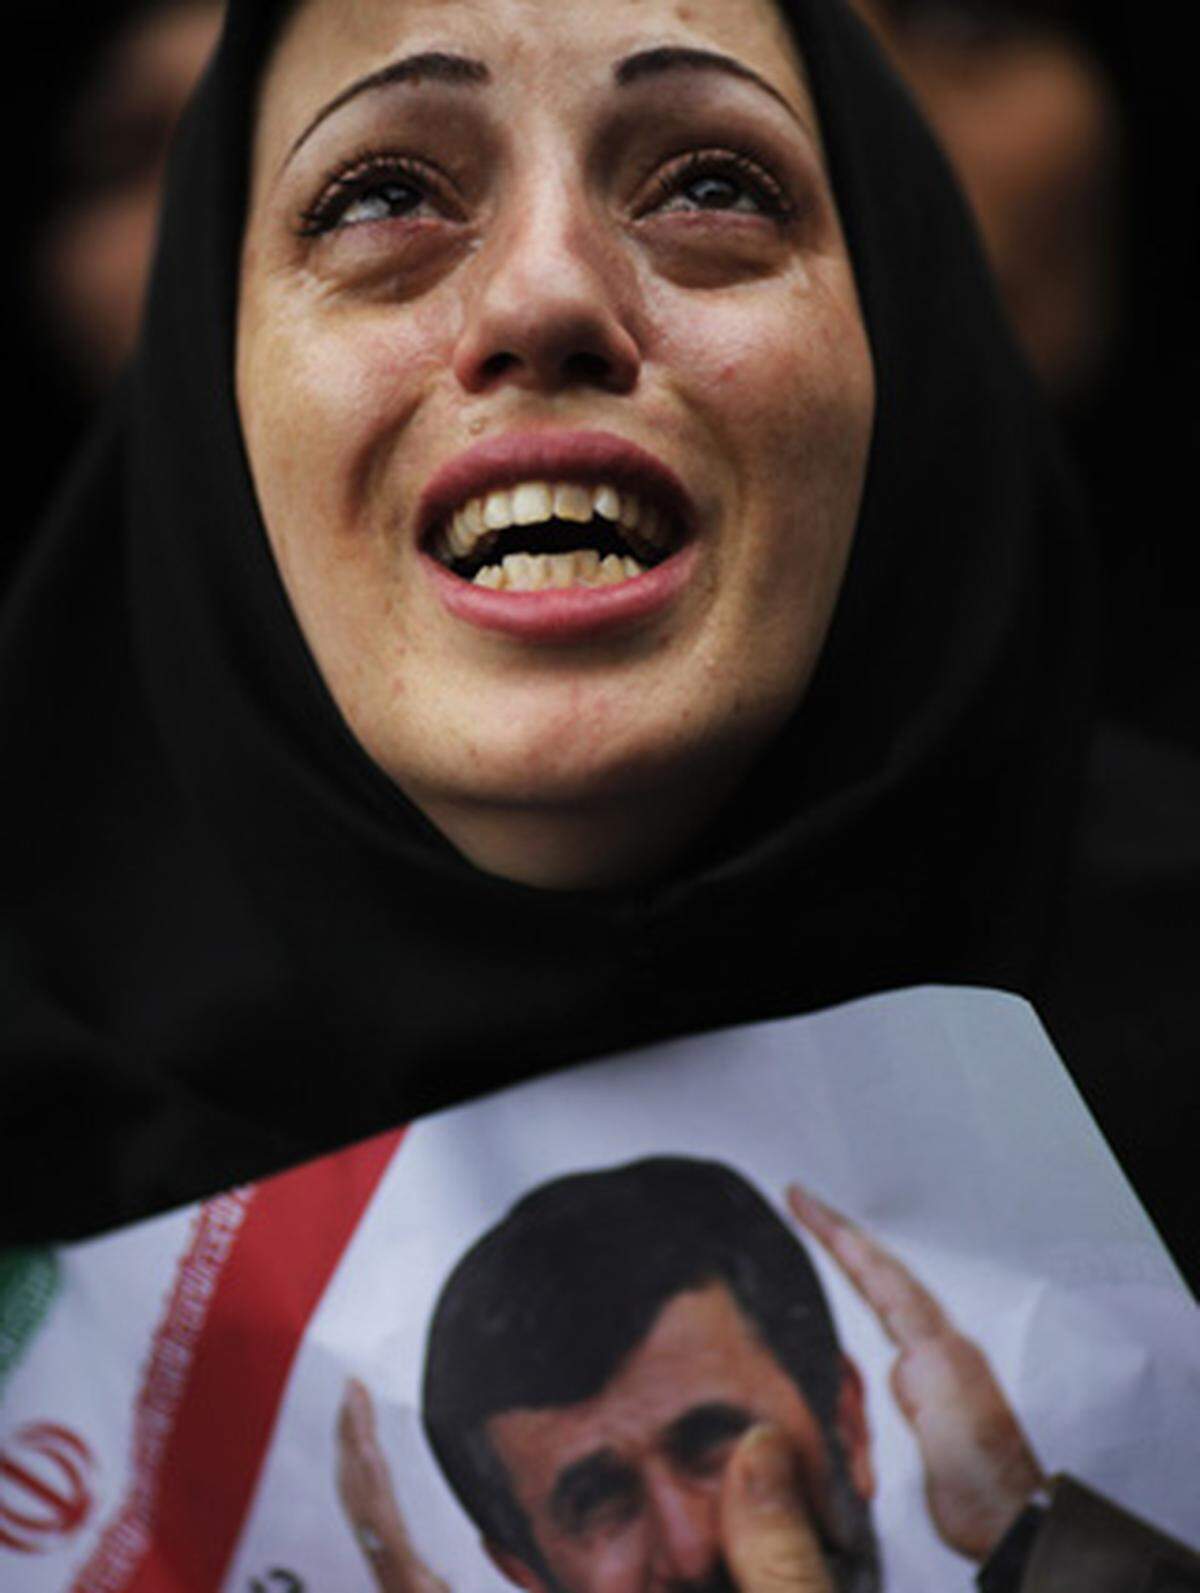 Seit der umstrittenen Wiederwahl von Staatspräsident Mahmoud Ahmadinejad im Juni dieses Jahres kam es im Iran immer wieder zu teils gewalttätigen Auseinandersetzungen zwischen der Opposition und den Sicherheitskräften. Eine Chronologie der vergangenen Monate:  12. Juni: Der ultrakonservative Präsident Ahmadinejad erreicht bei der Präsidentschaftswahl nach offiziellen Angaben fast 62 Prozent der Stimmen. Sein Herausforderer, der reformorientierte Mir-Hossein Moussavi, bekommt nur knapp 34 Prozent.